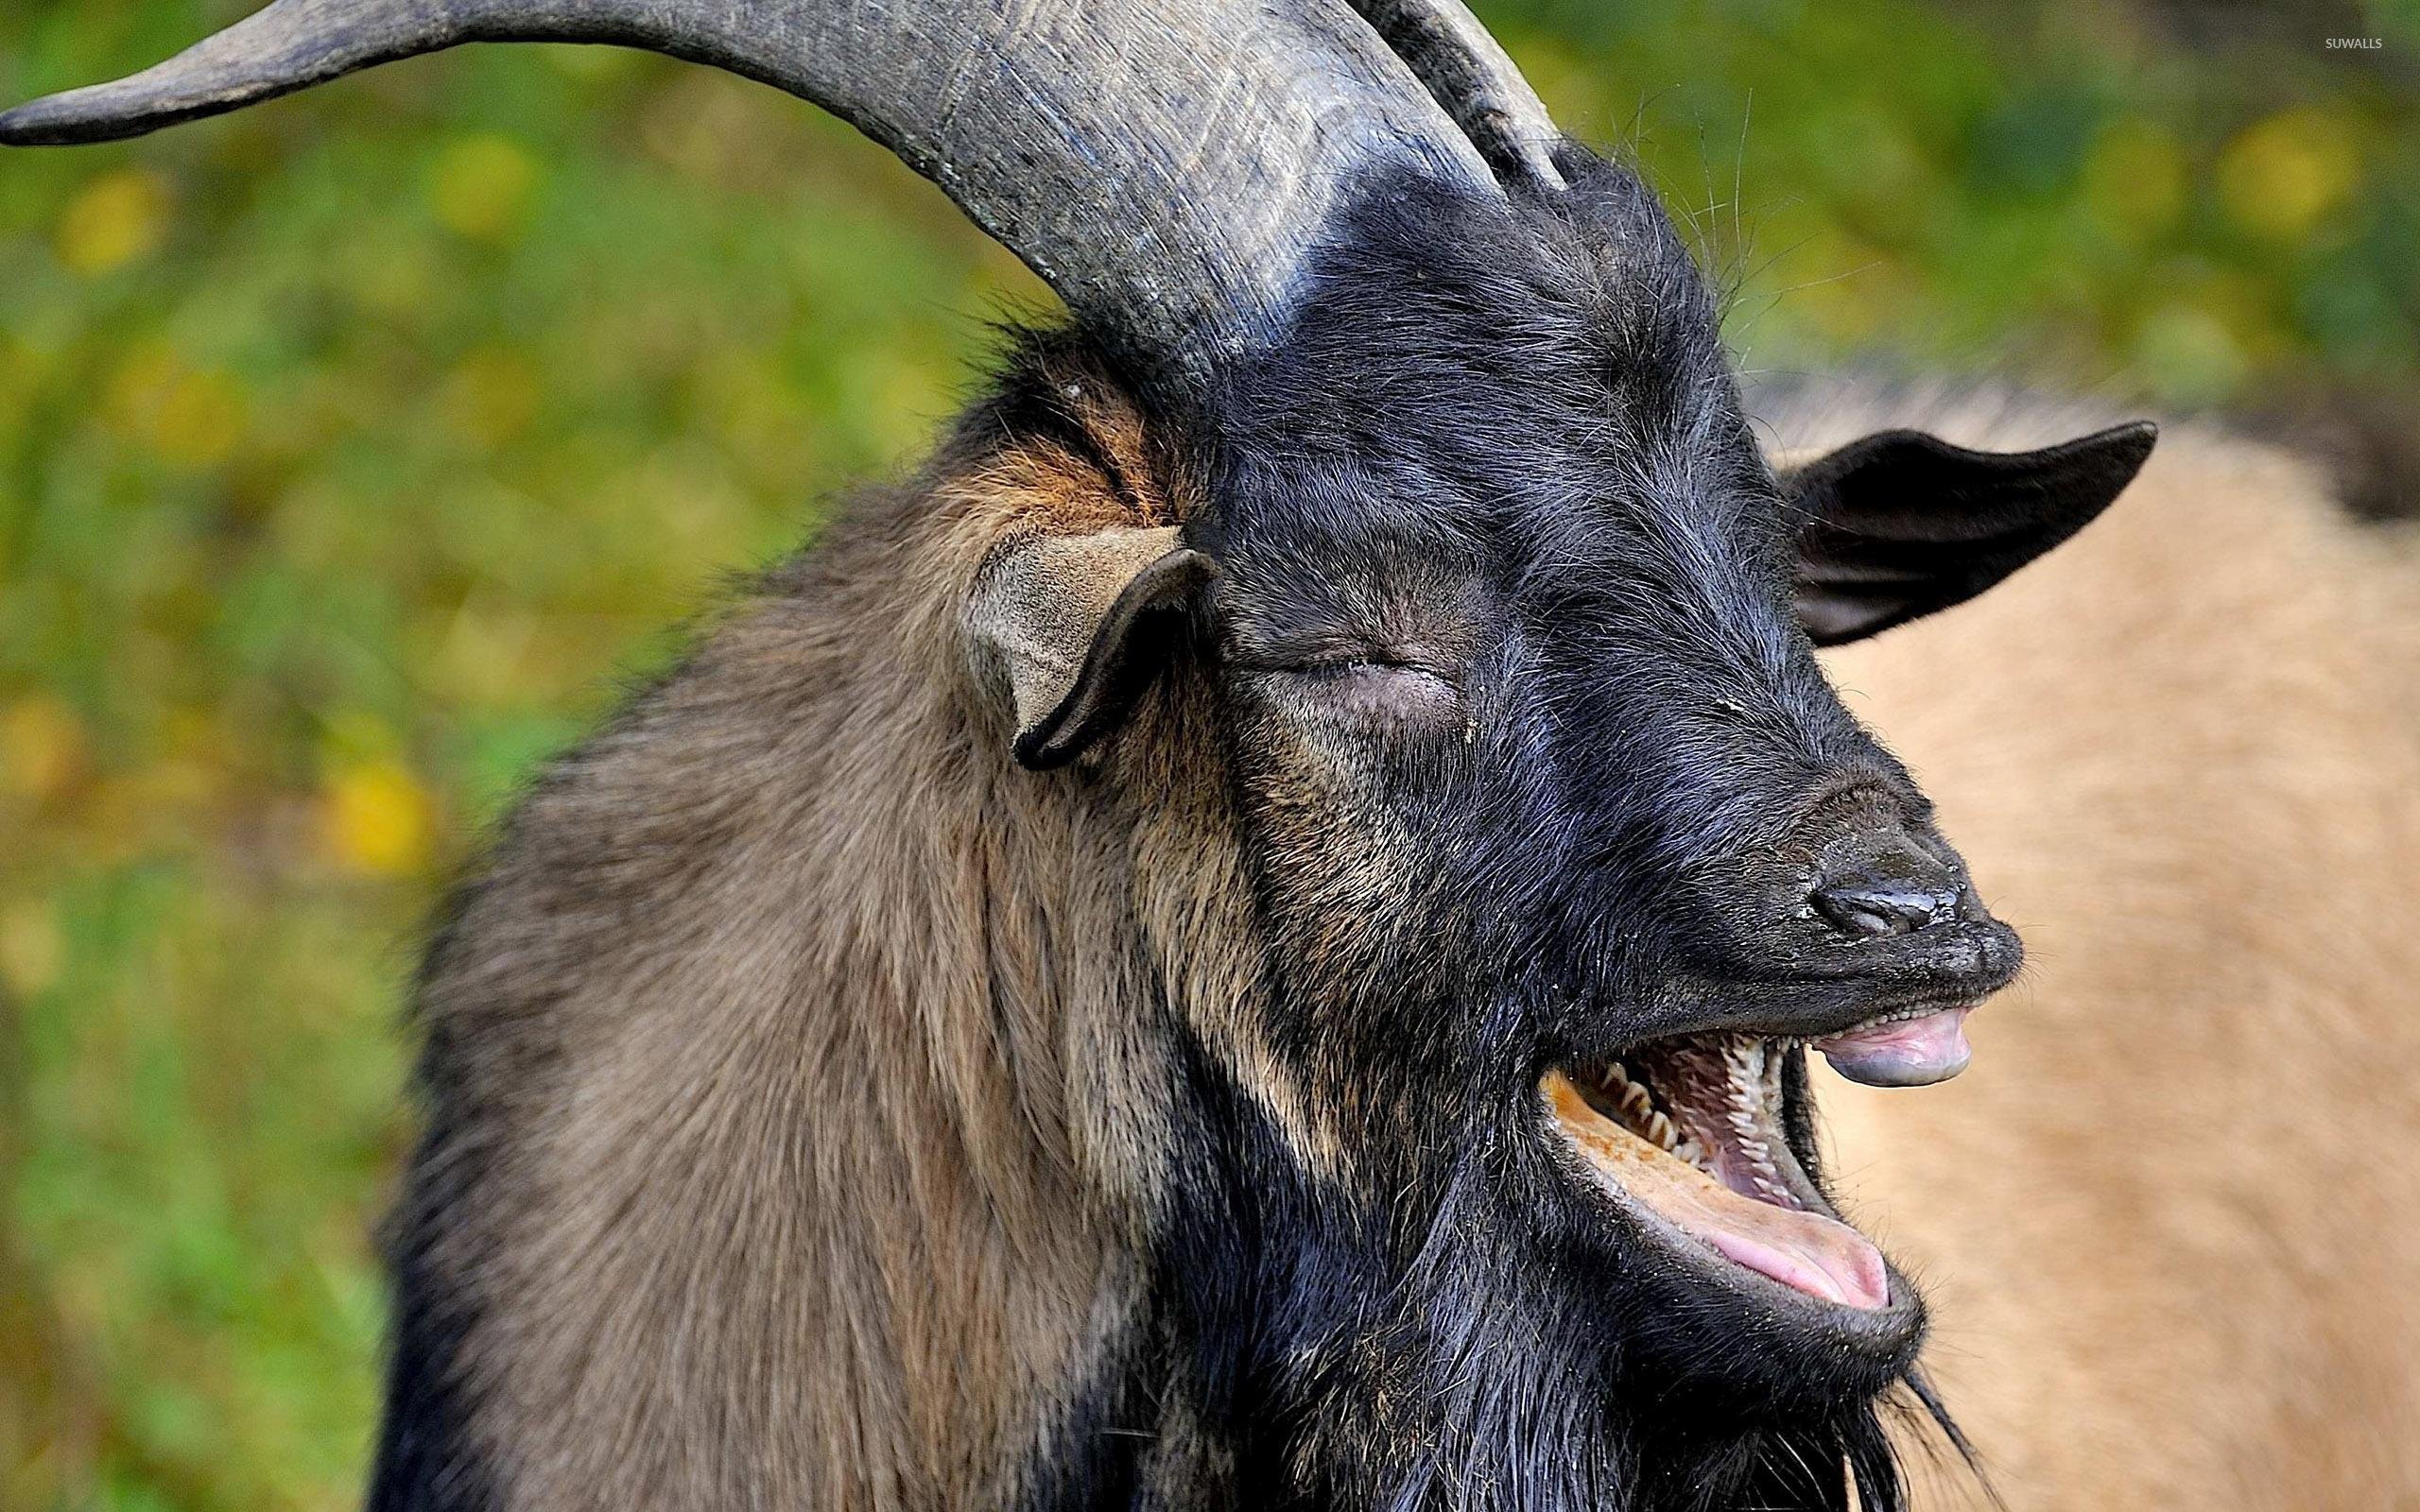 Wallpaper summer nature goats images for desktop section животные   download